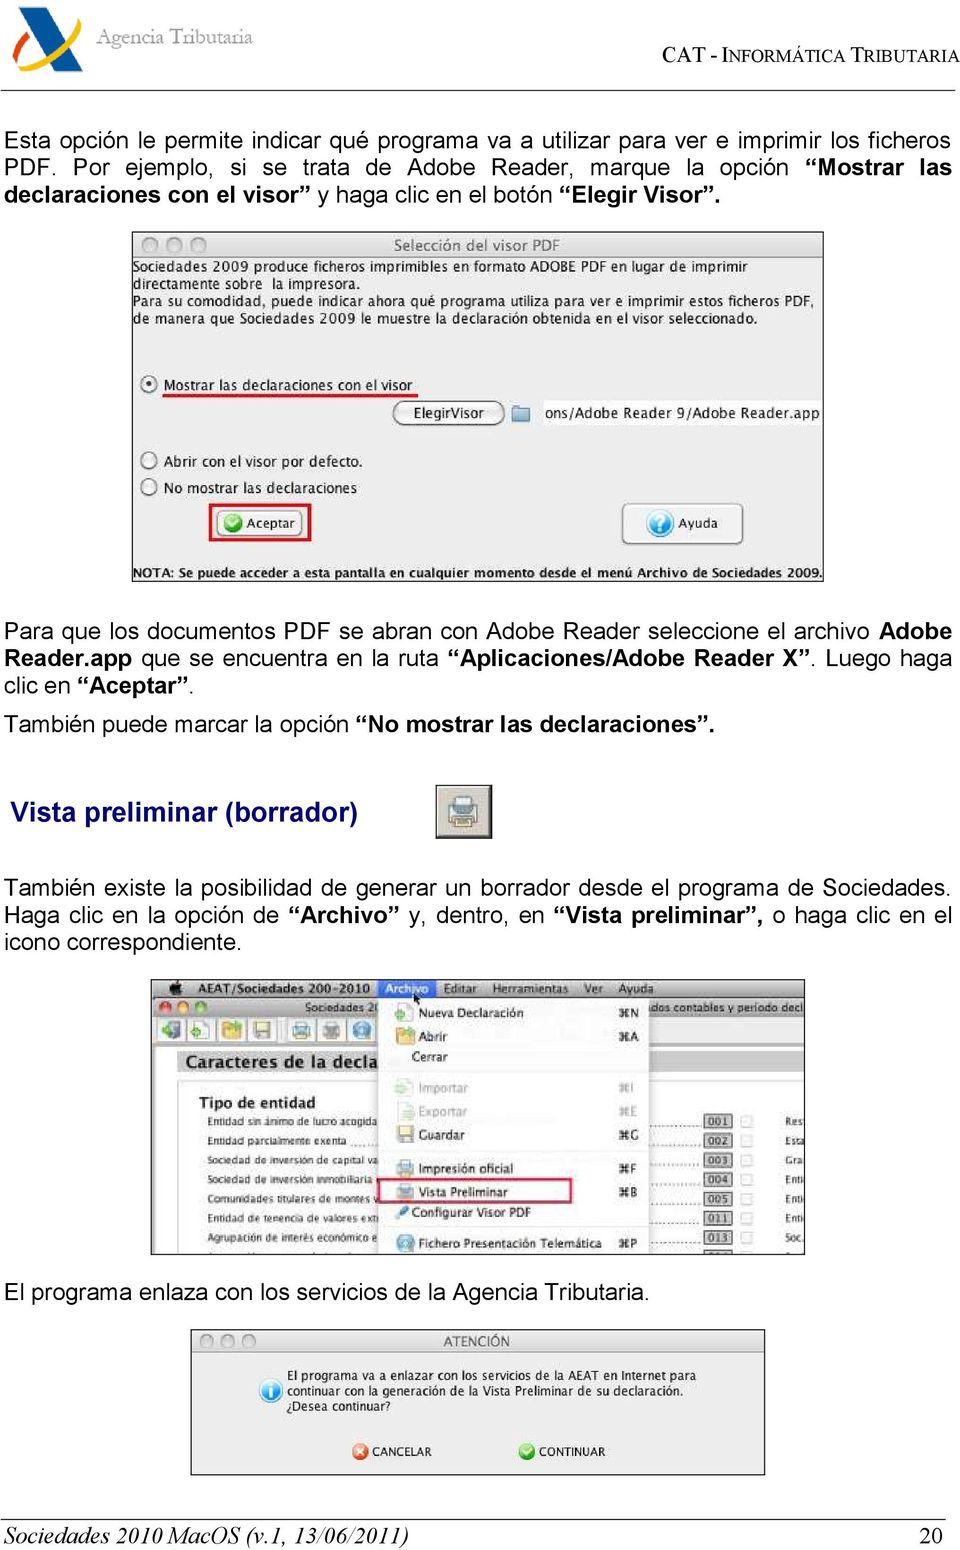 Para que los documentos PDF se abran con Adobe Reader seleccione el archivo Adobe Reader.app que se encuentra en la ruta Aplicaciones/Adobe Reader X. Luego haga clic en Aceptar.